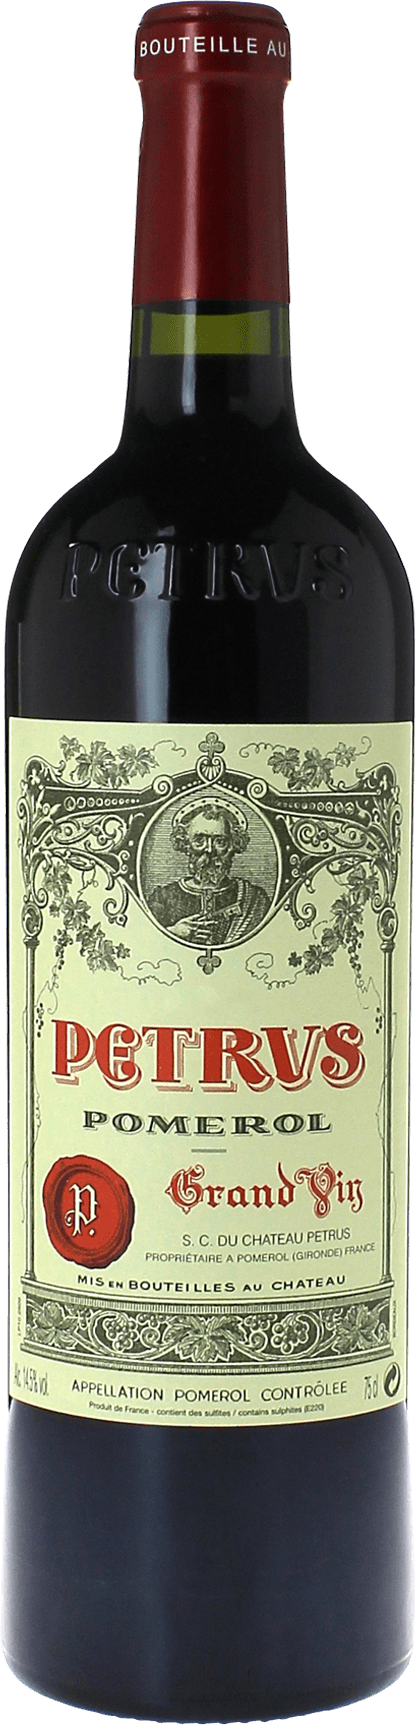 Petrus 1986  Pomerol, Bordeaux rouge